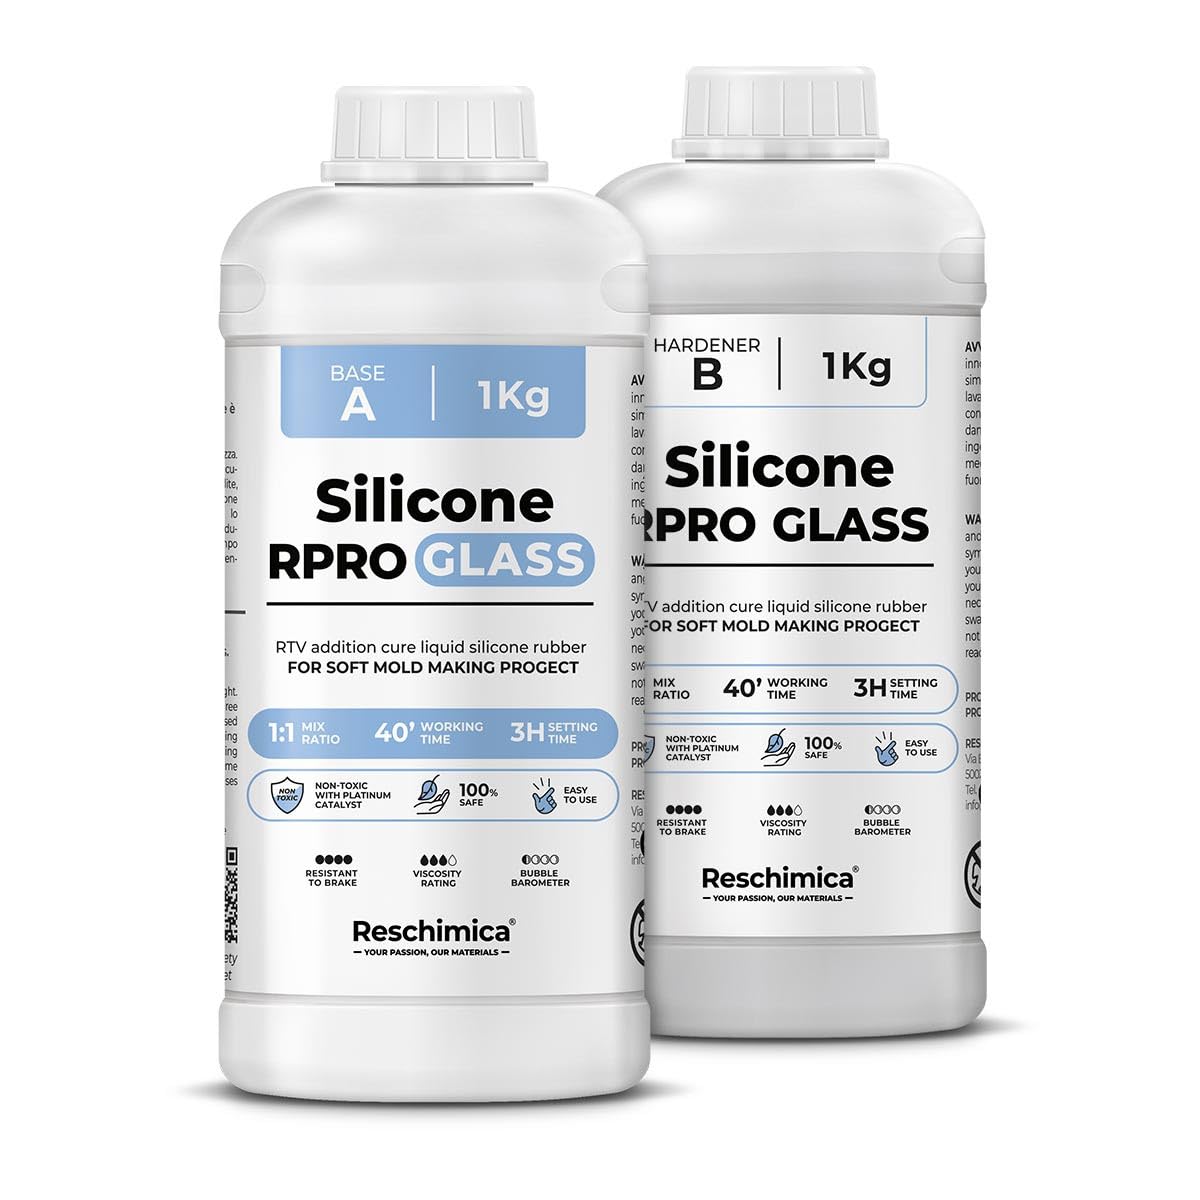 R PRO GLASS - Silicone liquide translucide pour moules souples